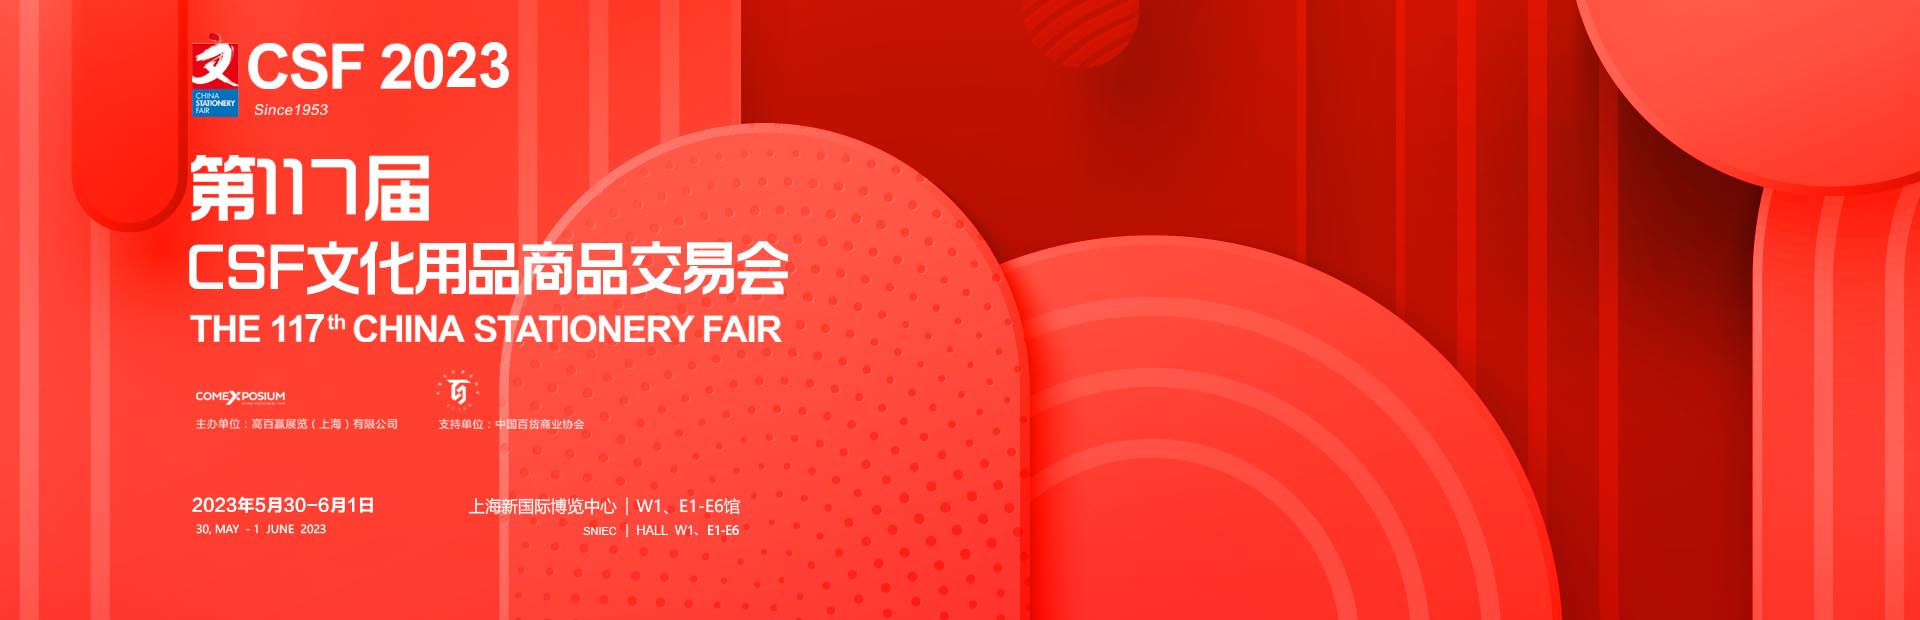 2023年CSF第117届中国文化用品商品交易会-上海文具展